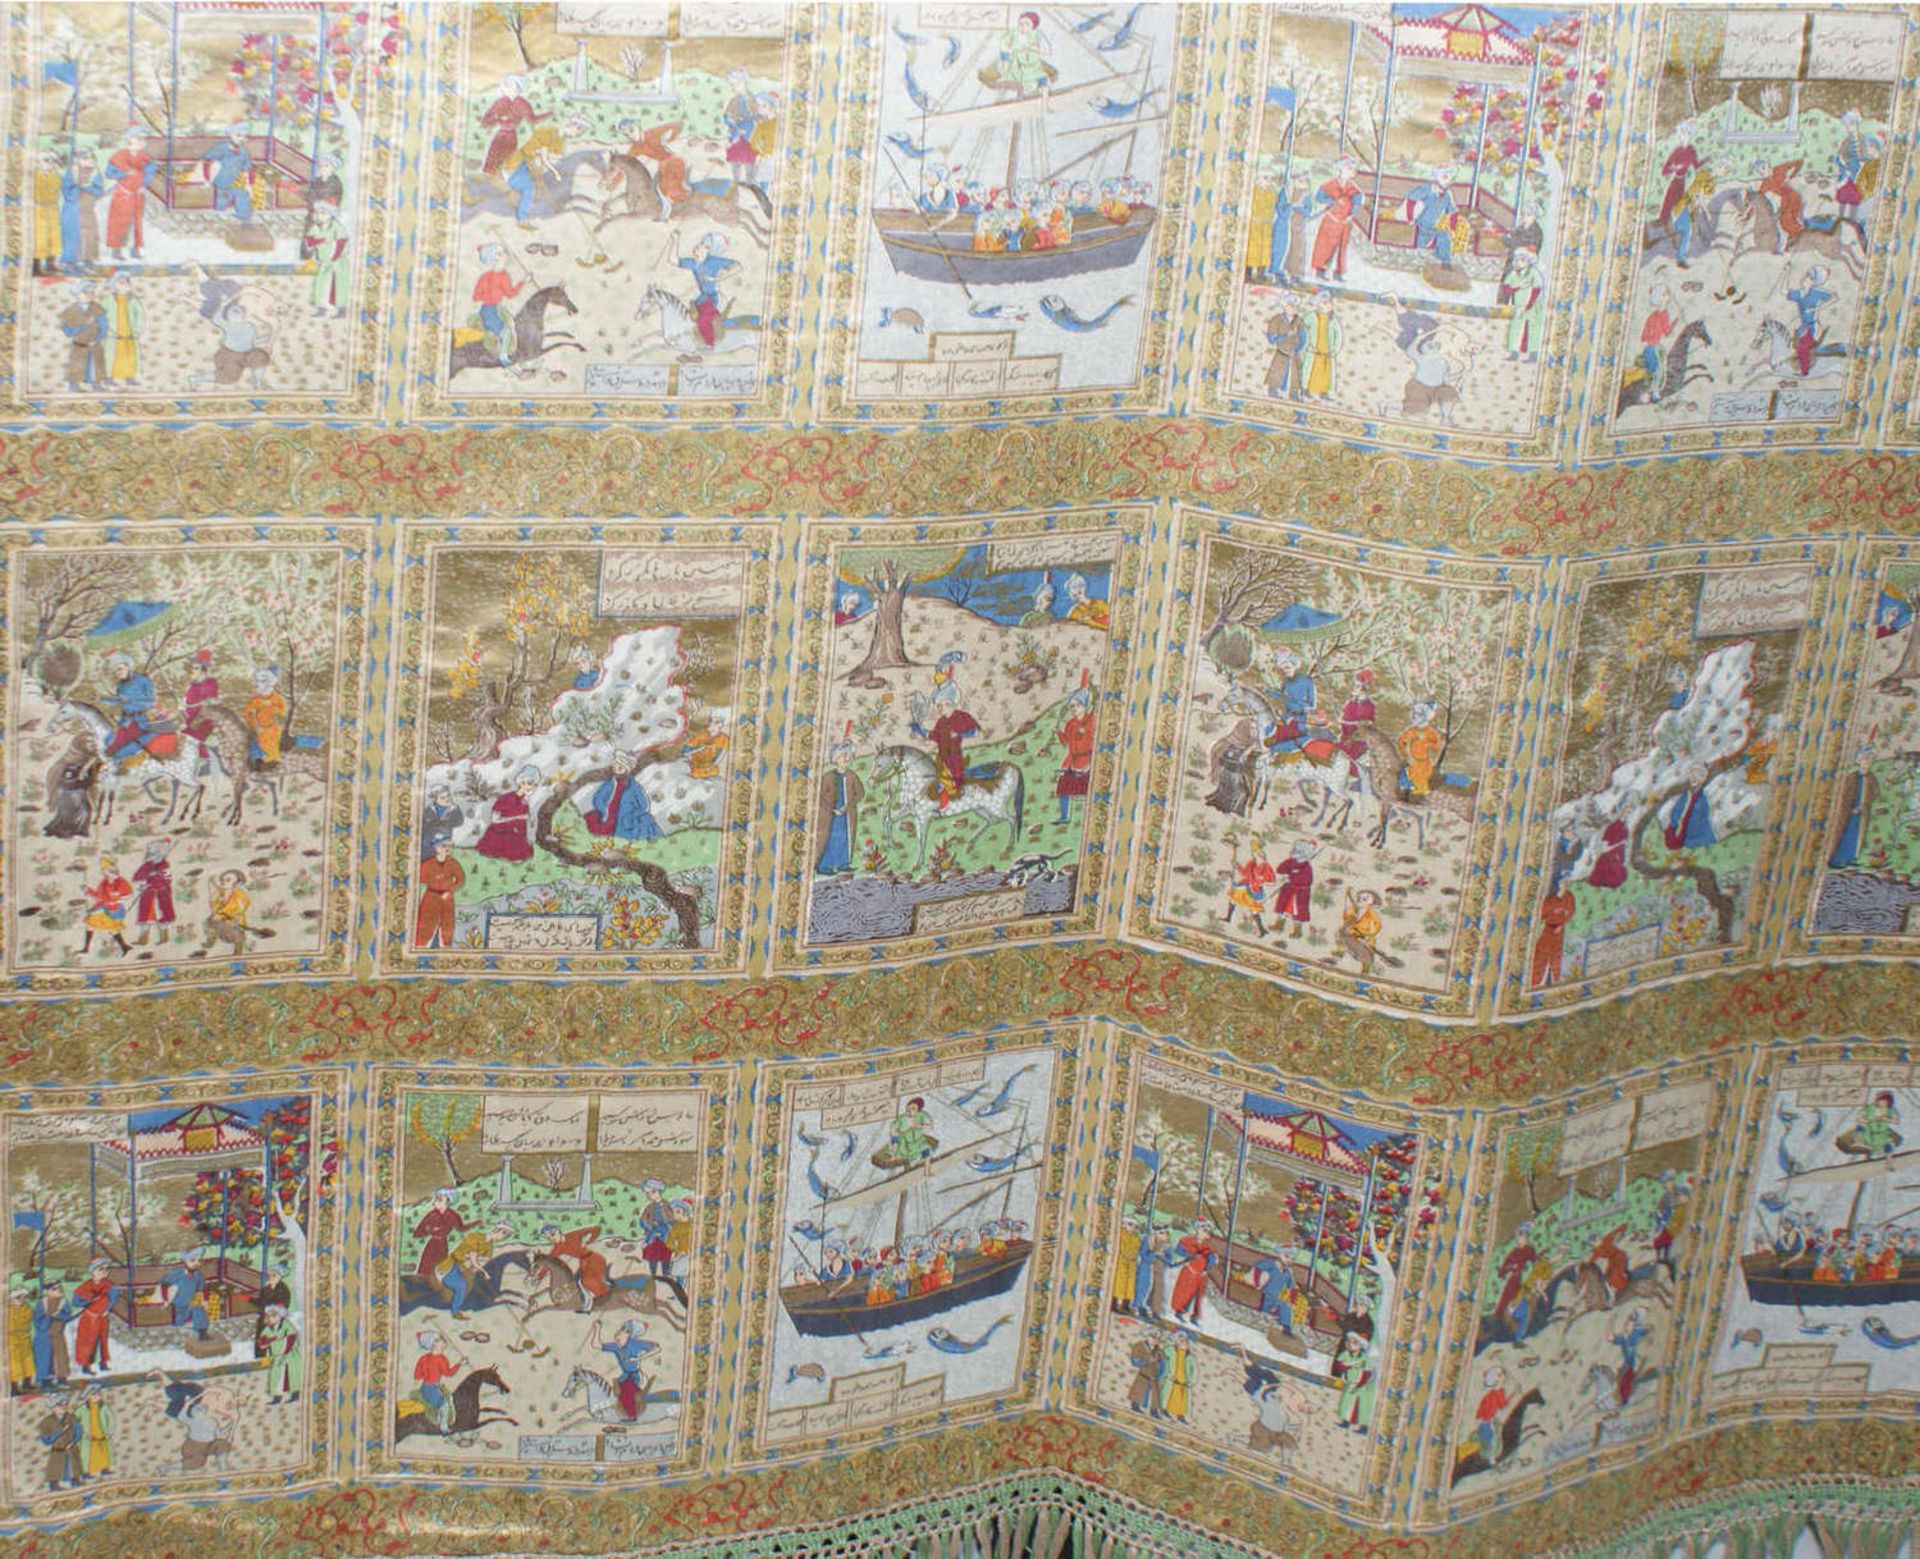 großer Wandteppich mit verschiedenen kleinen Motivbildern, Länge ca. 2,00 m, Breite ca. 1,20 m. - Bild 3 aus 4